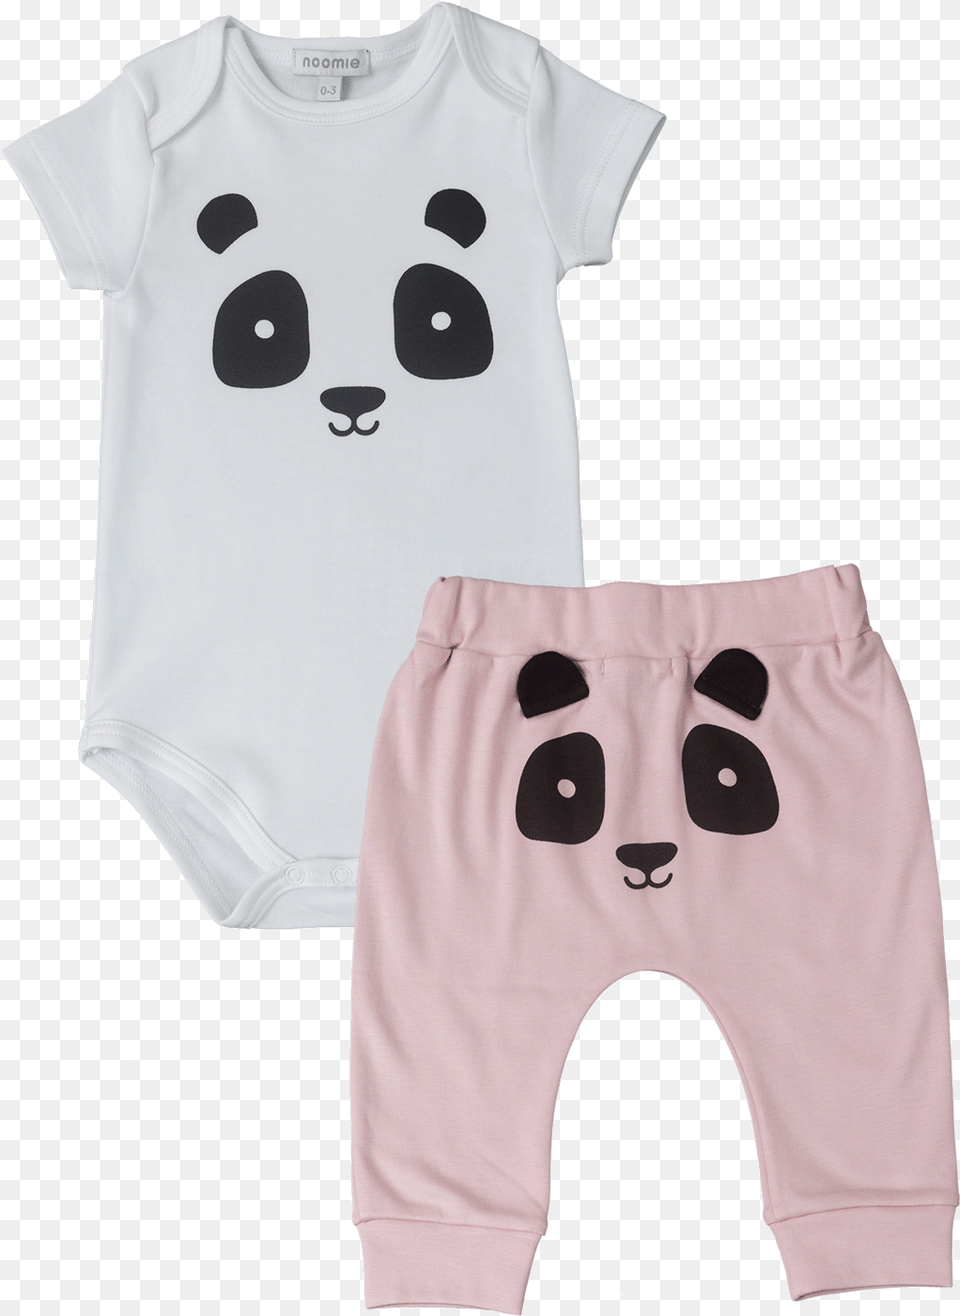 Baby Onesie Panda, Clothing, T-shirt, Undershirt, Shorts Free Png Download